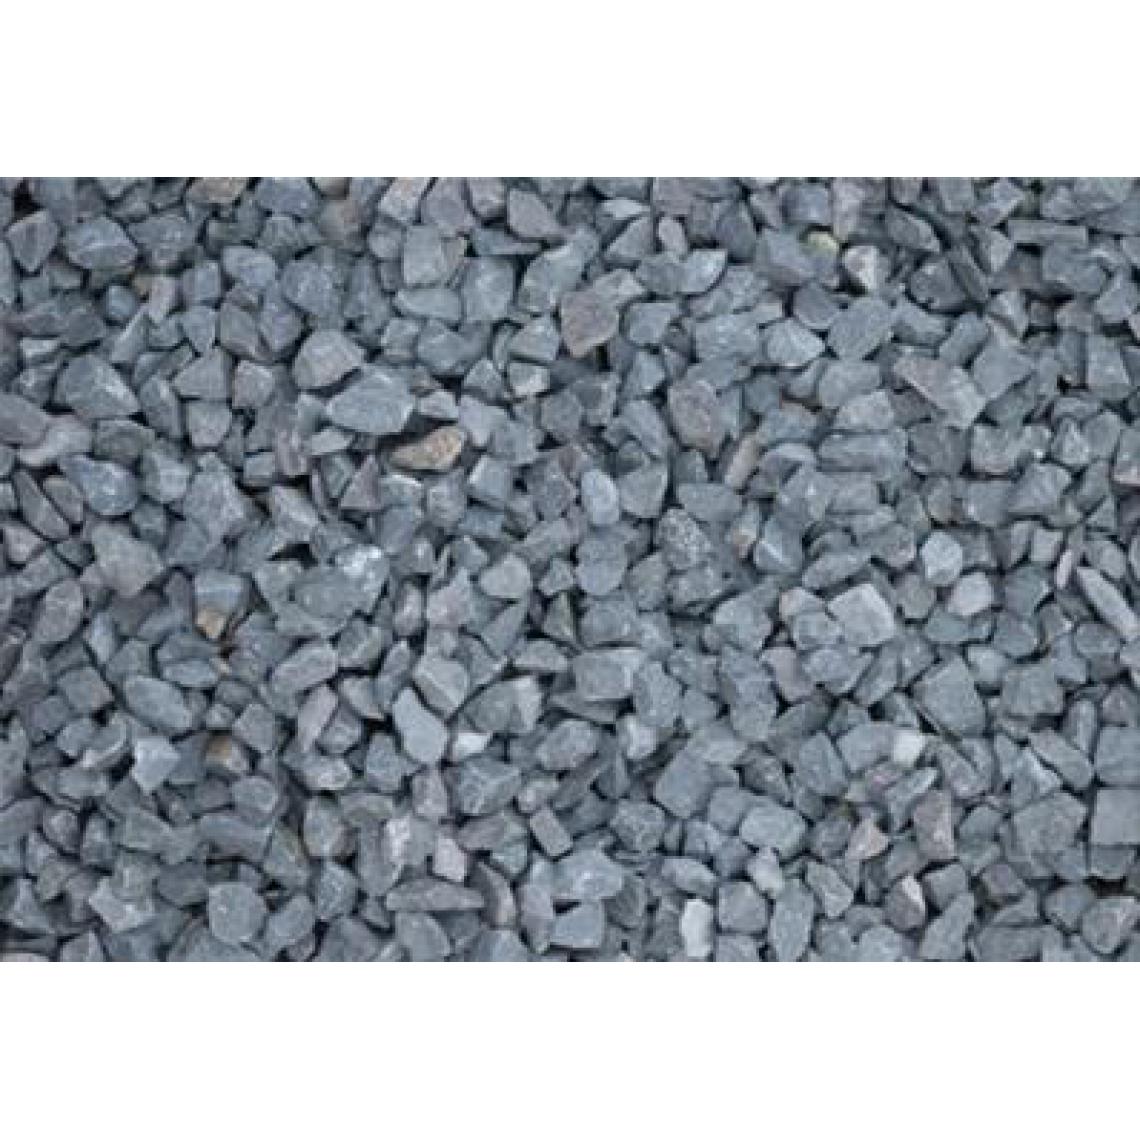 Scmcs - Gravillons noir basalte 6/10 400 kg - 16x25kgs - Graviers et galets